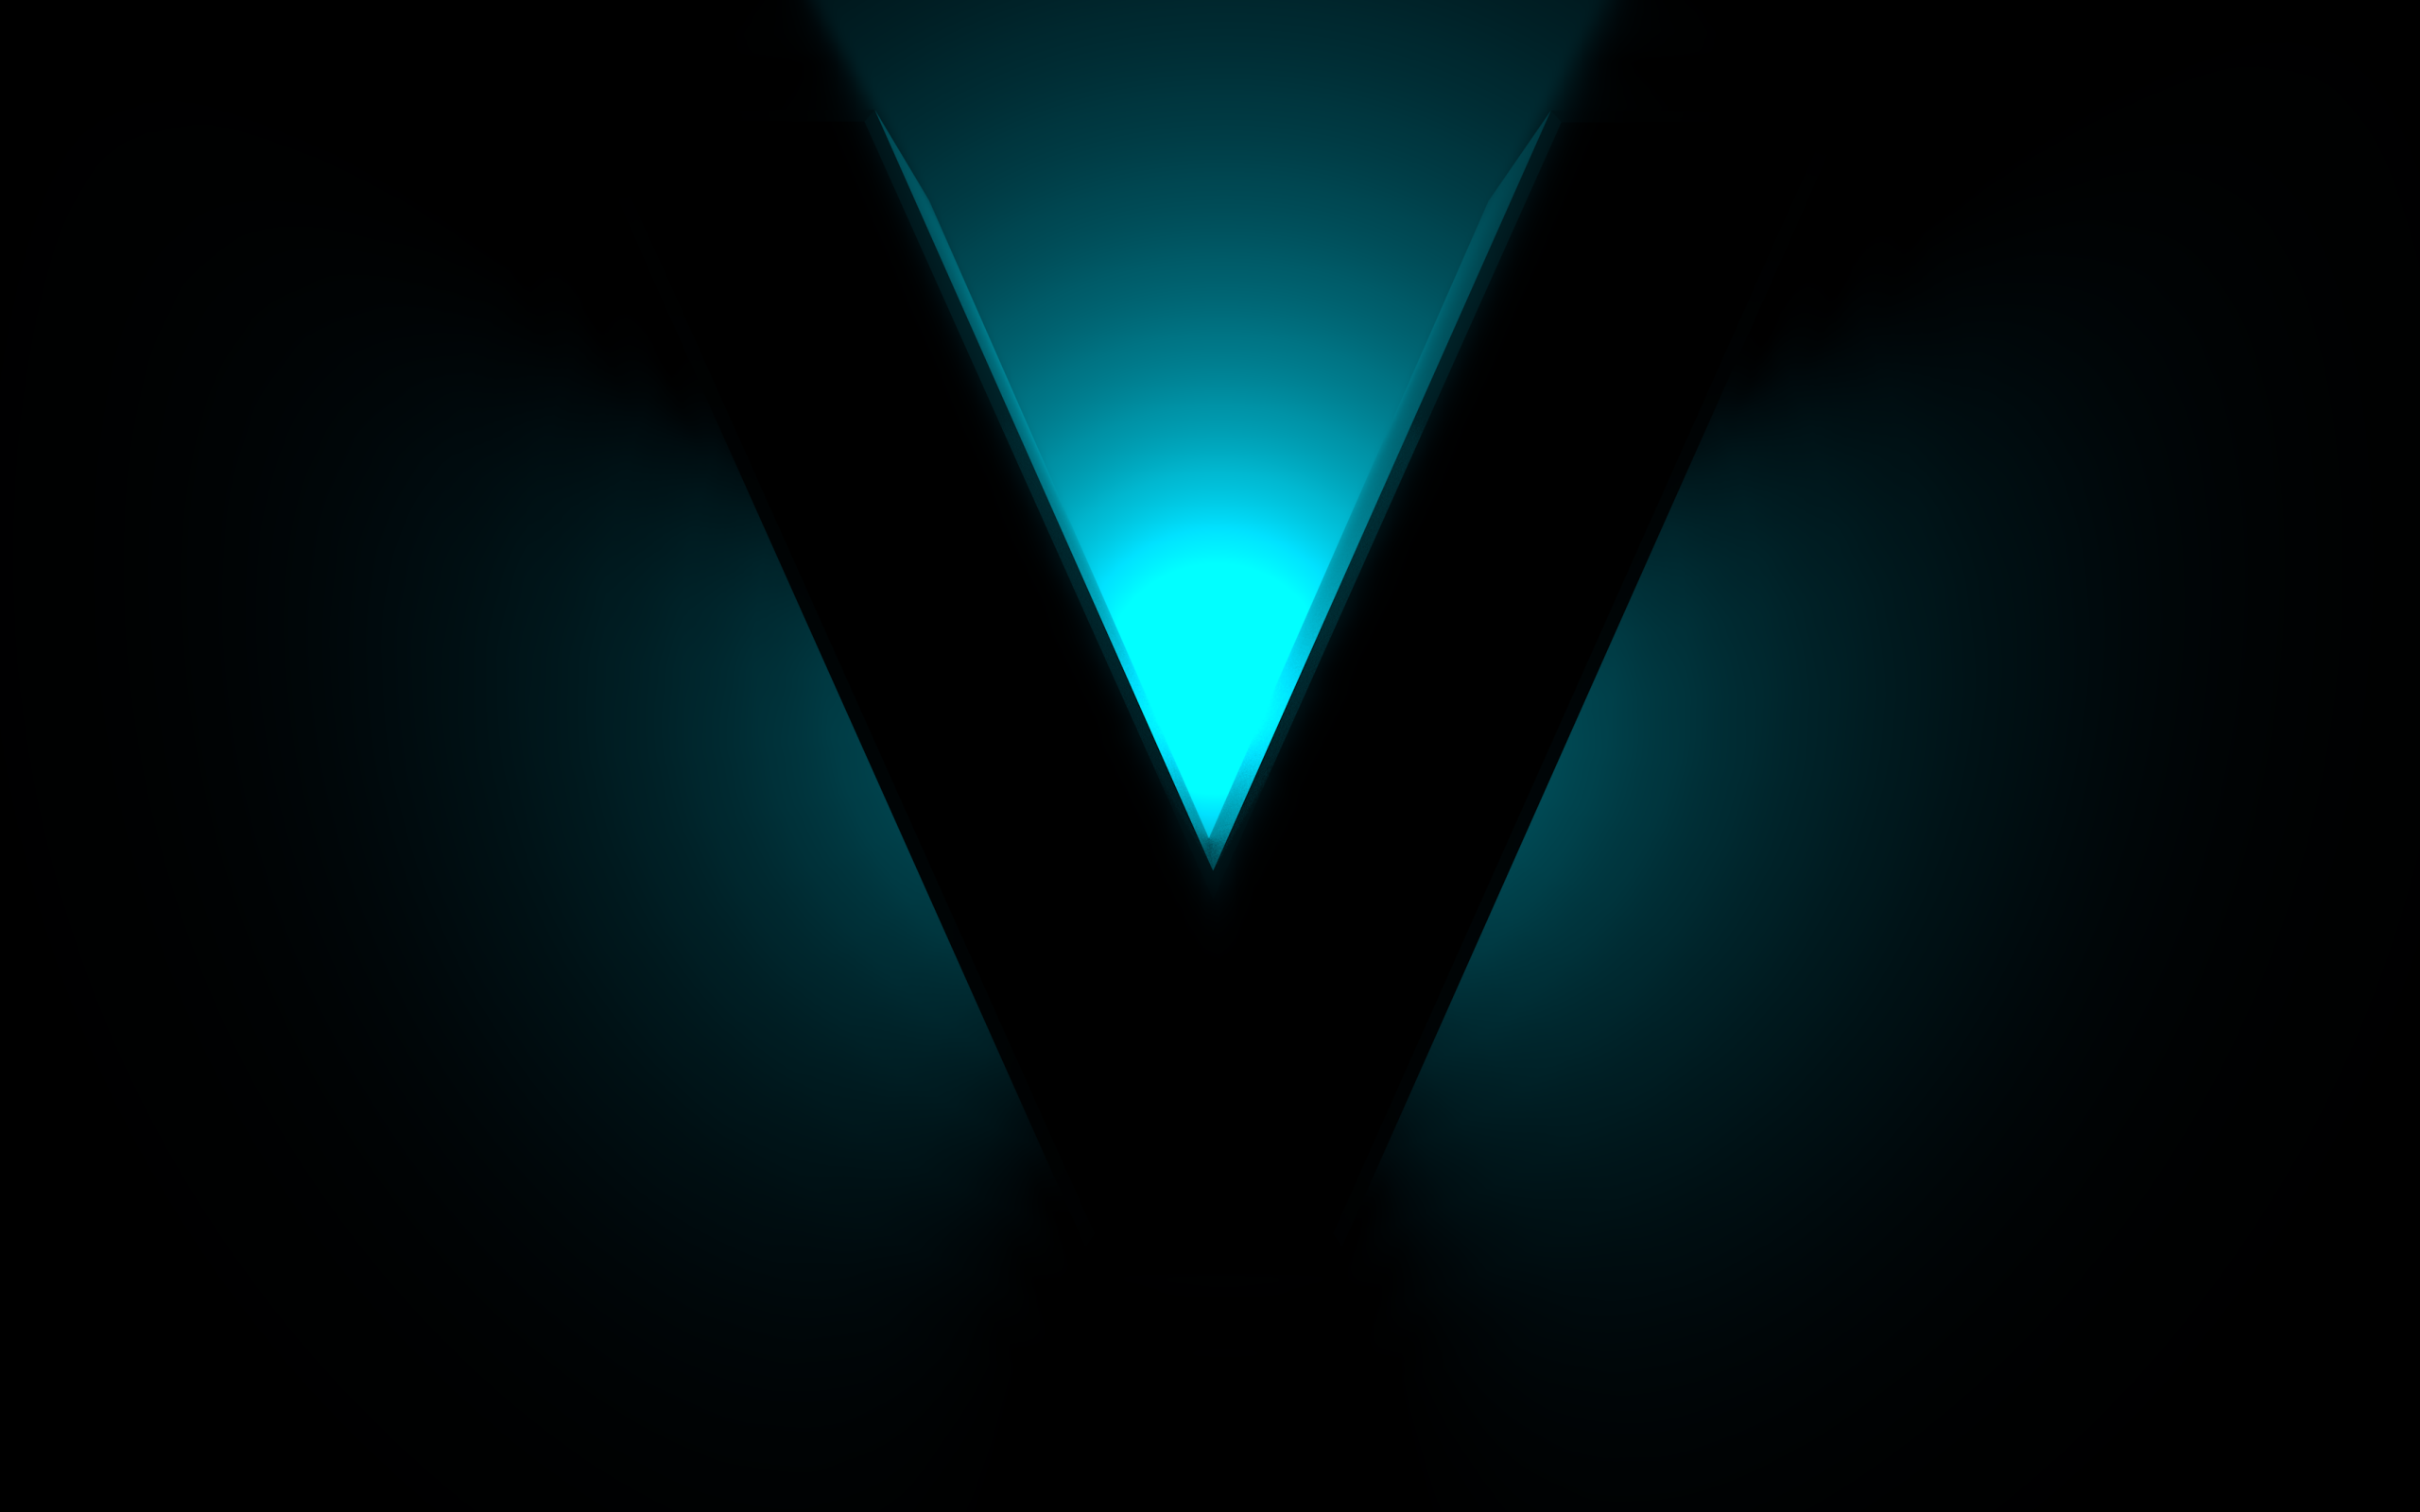 Big black V sign on a blue background